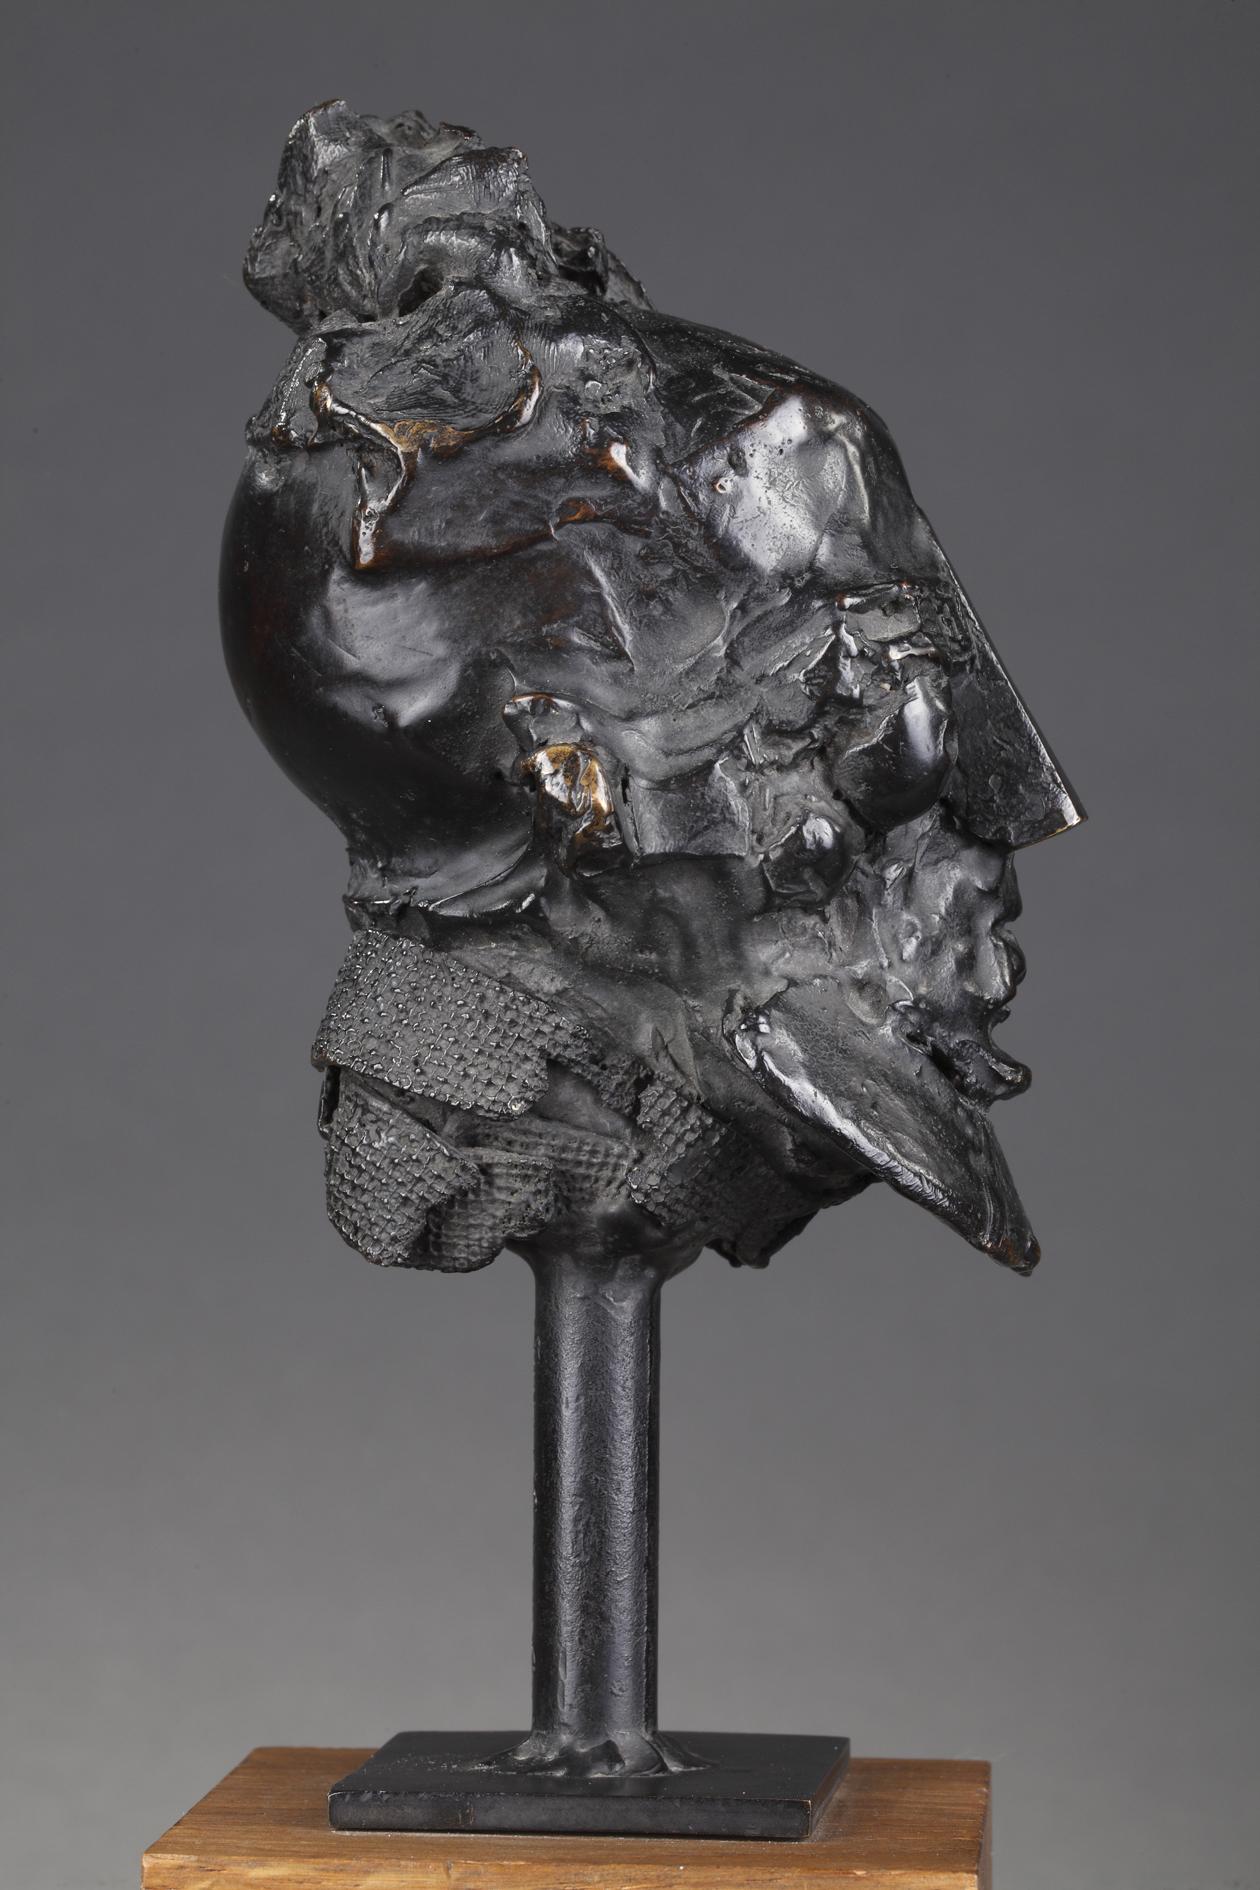 Laurent Belloni (né En 1969)
Man's head
 
Bronze cast with a nuanced black patina
Signed 